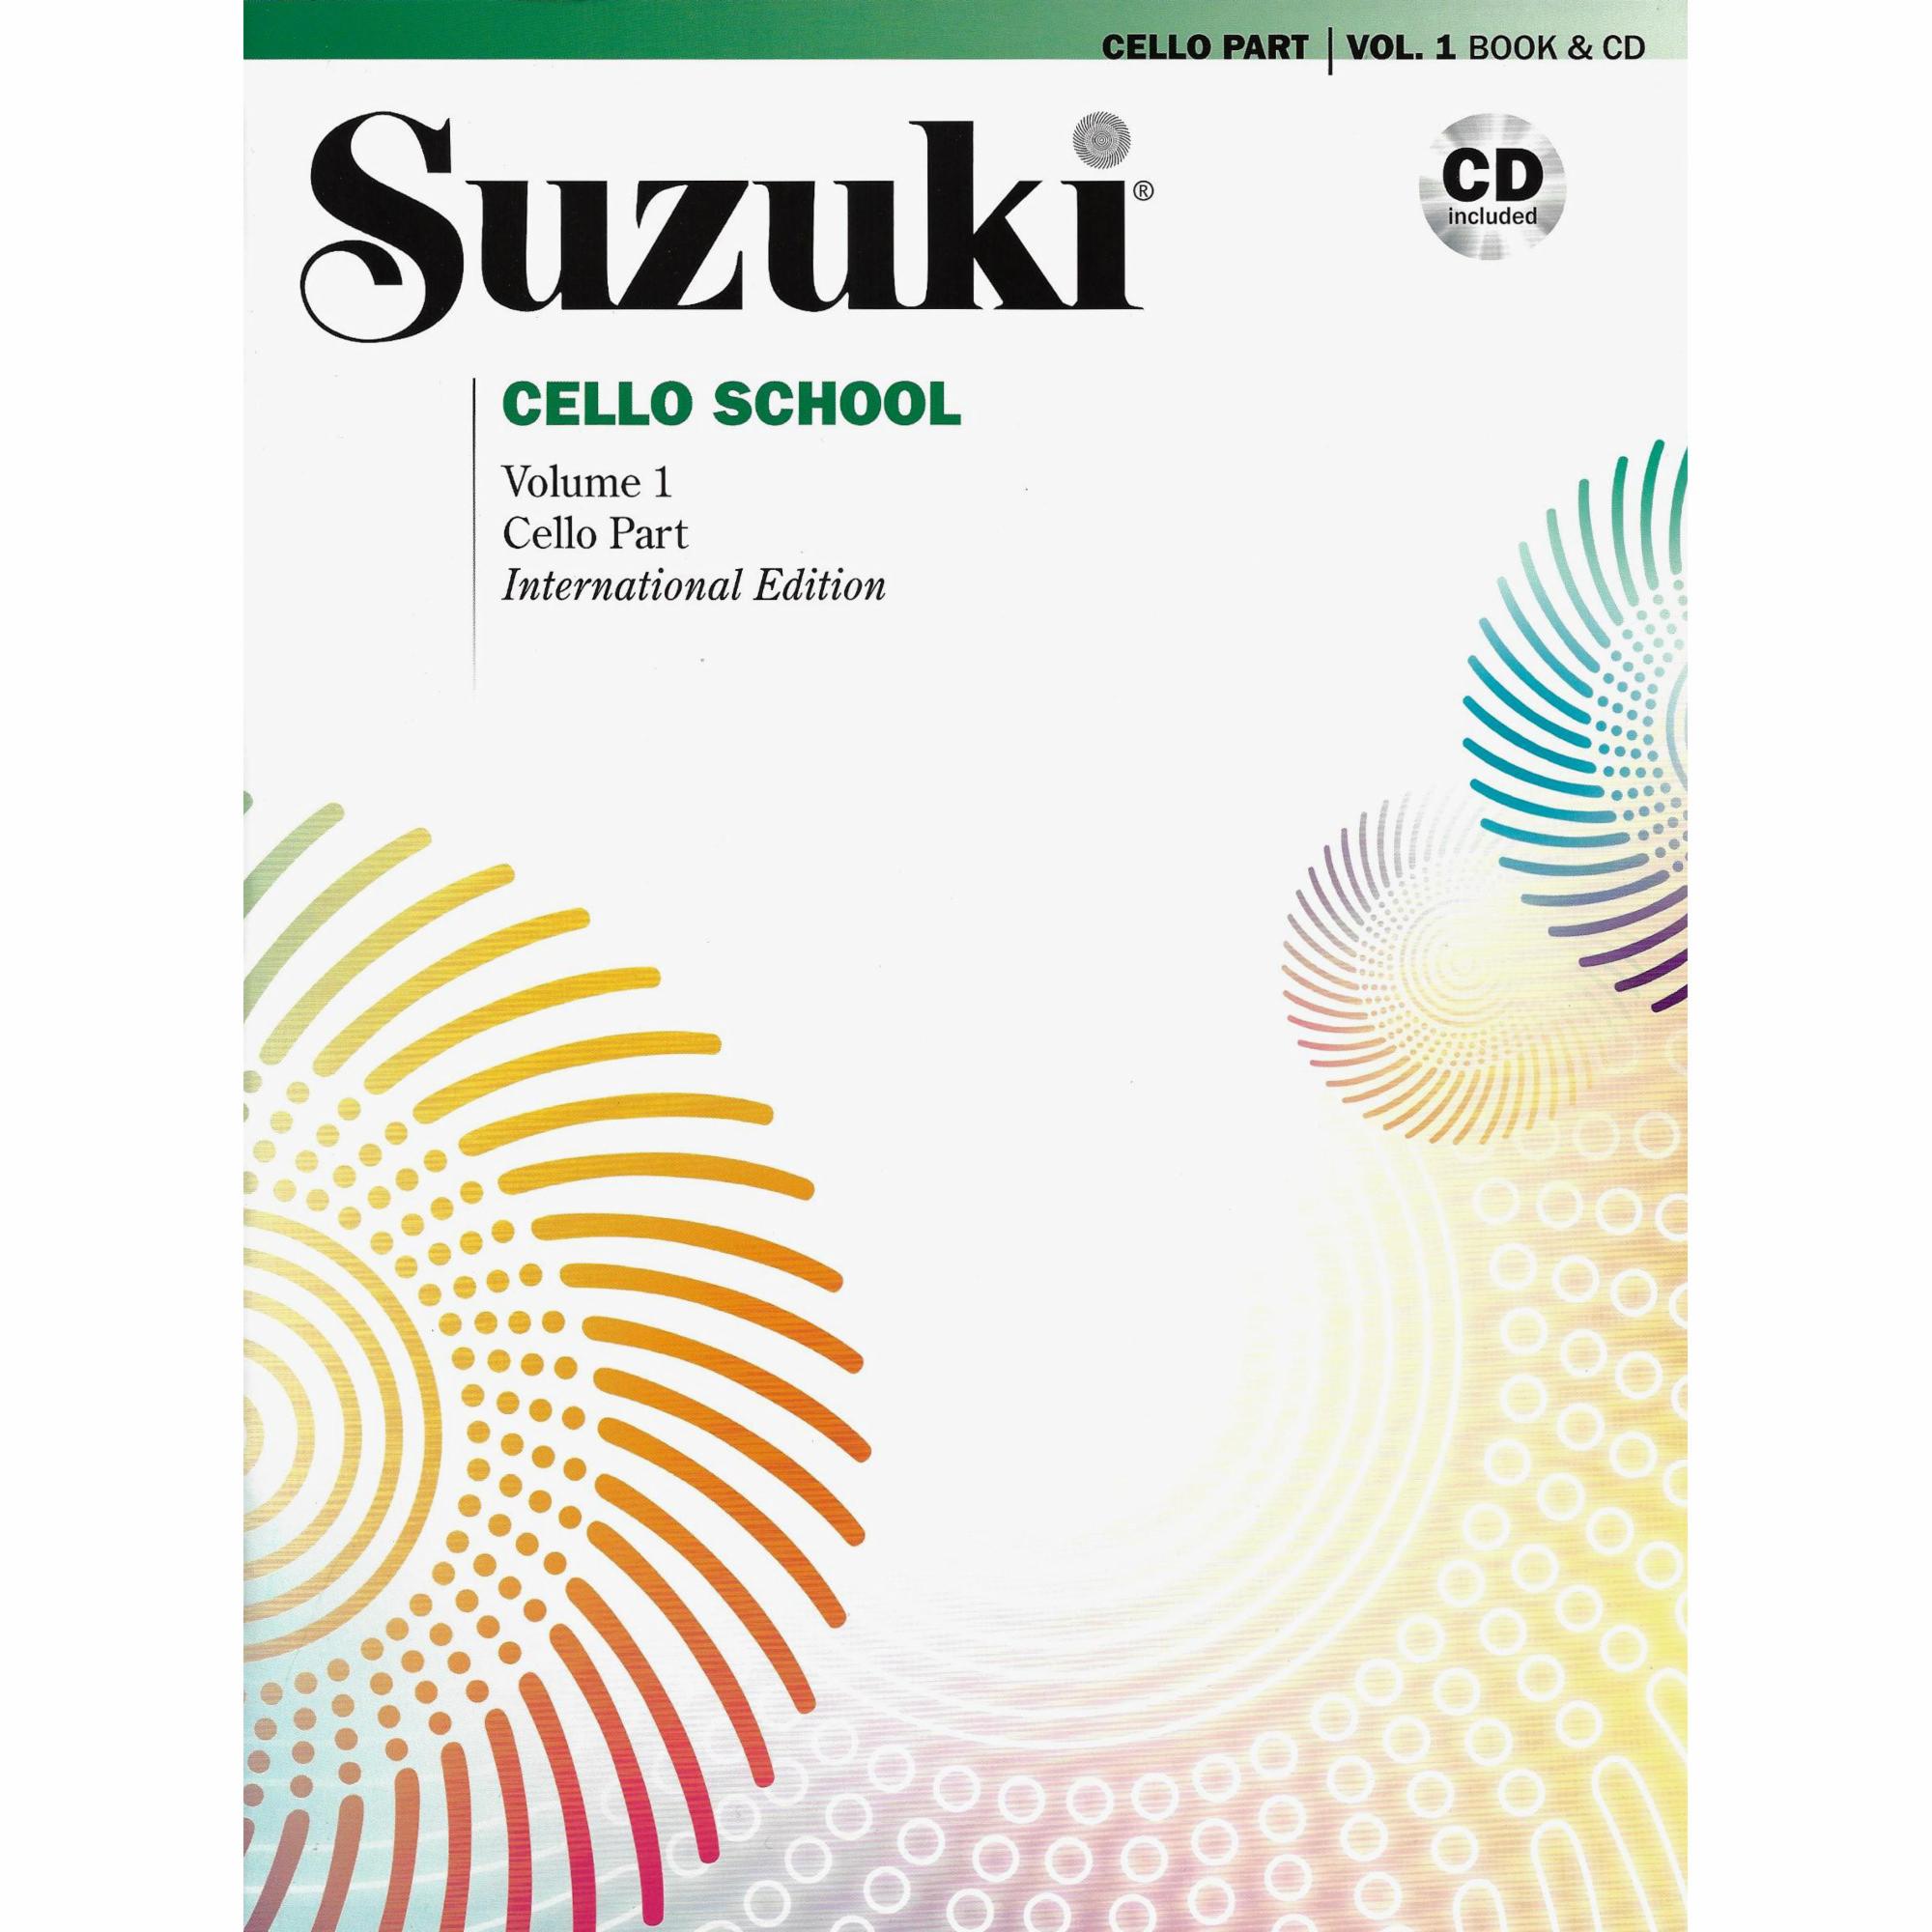 Suzuki Cello School: Cello Part and CD Combo Packs